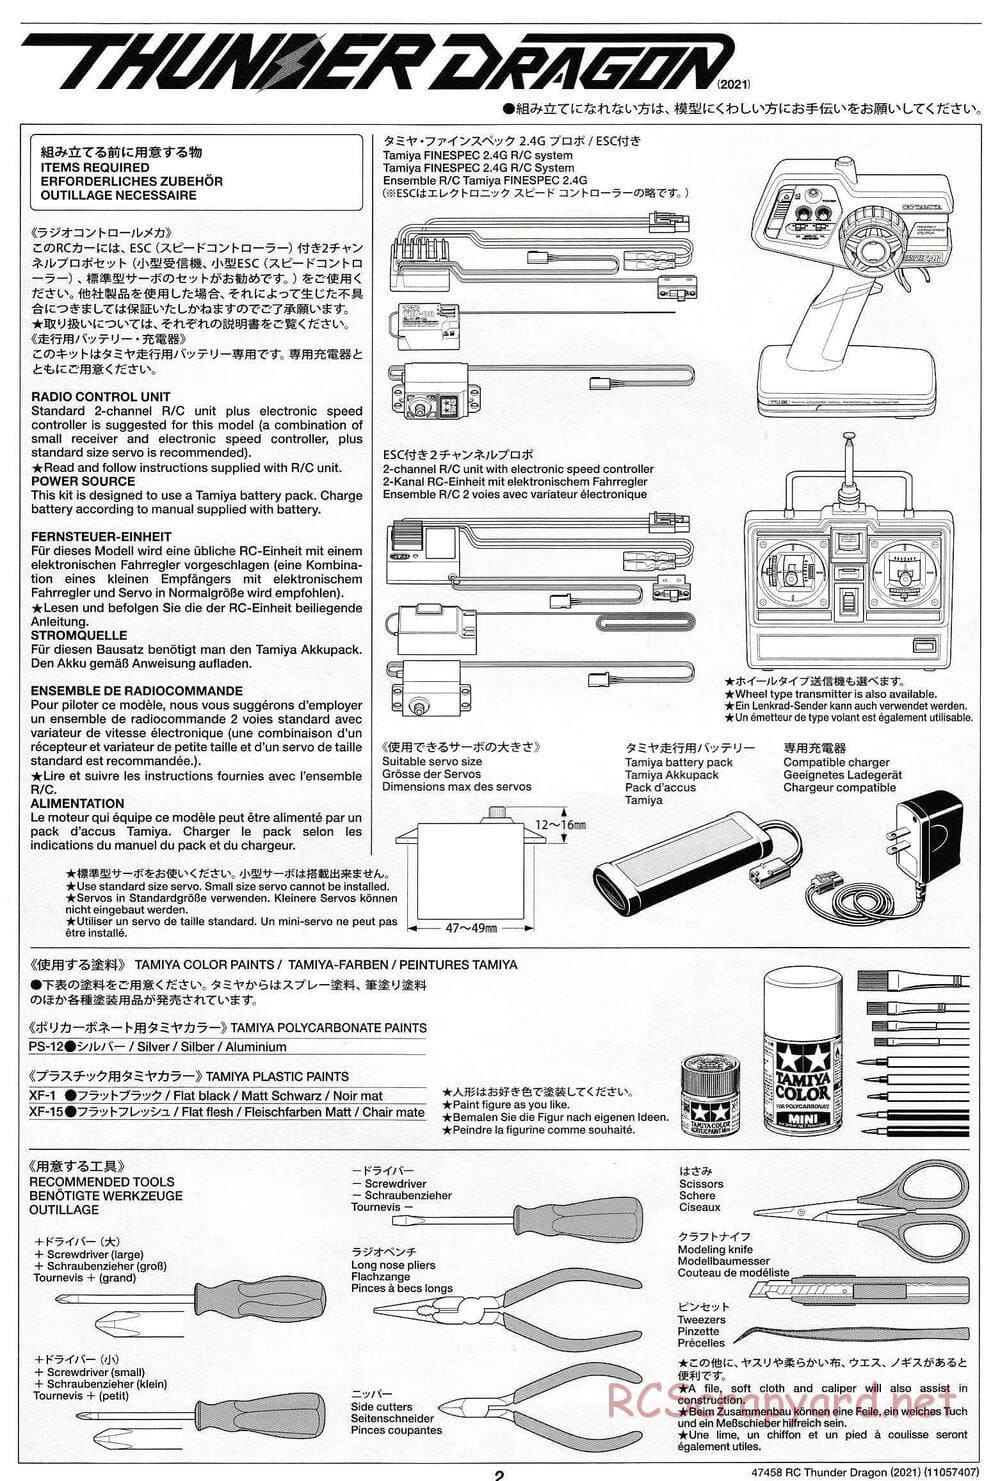 Tamiya - Thunder Dragon (2021) Chassis - Manual - Page 2